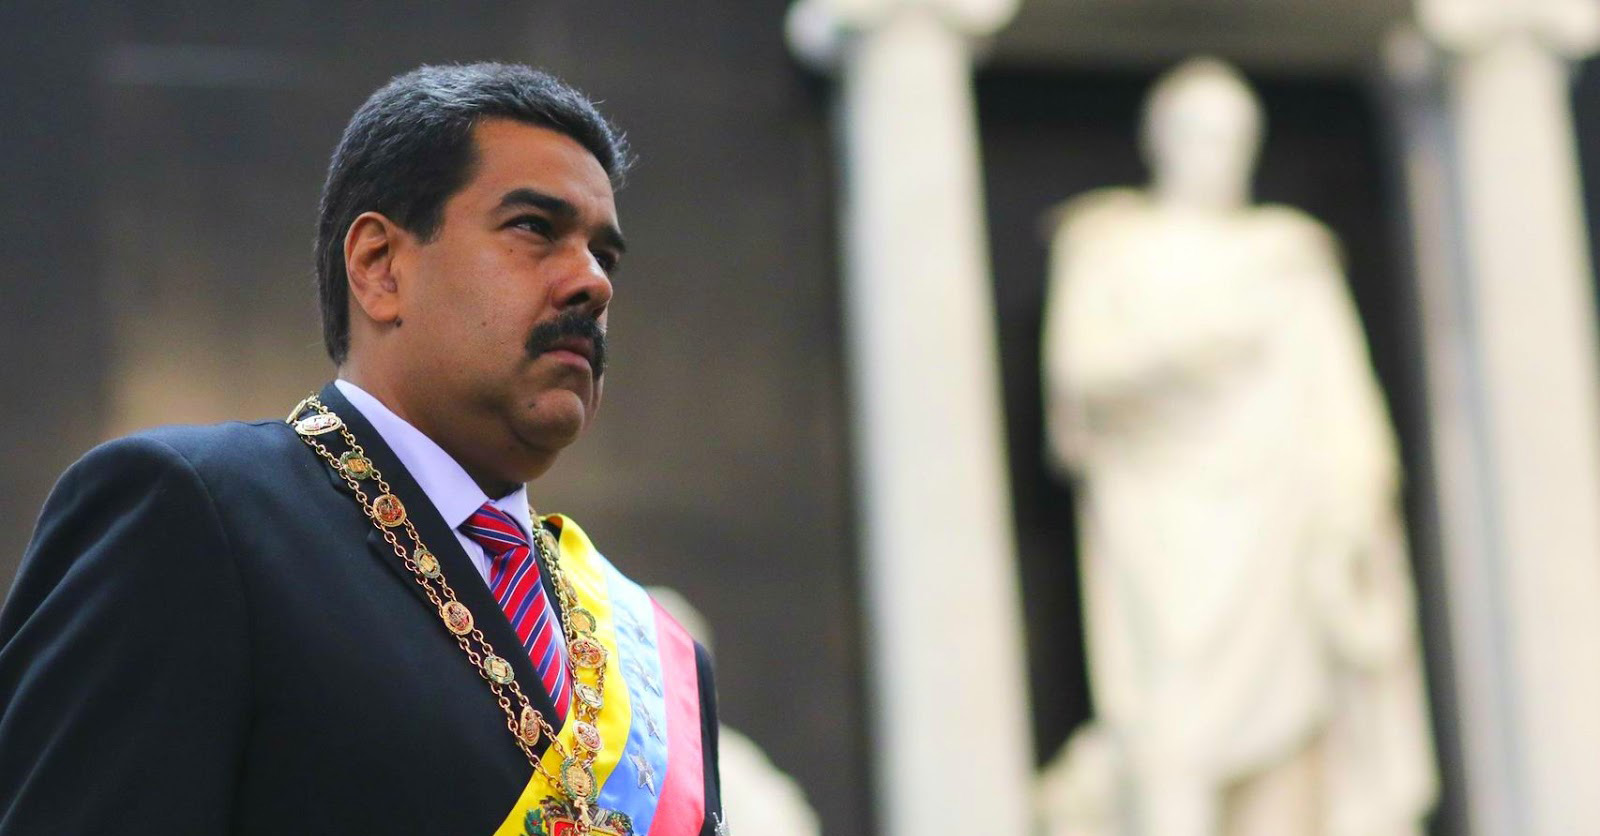 El ente de Justicia declaró una sentencia en la que aclara las dudas planteadas sobre la nacionalidad del presidente venezolano